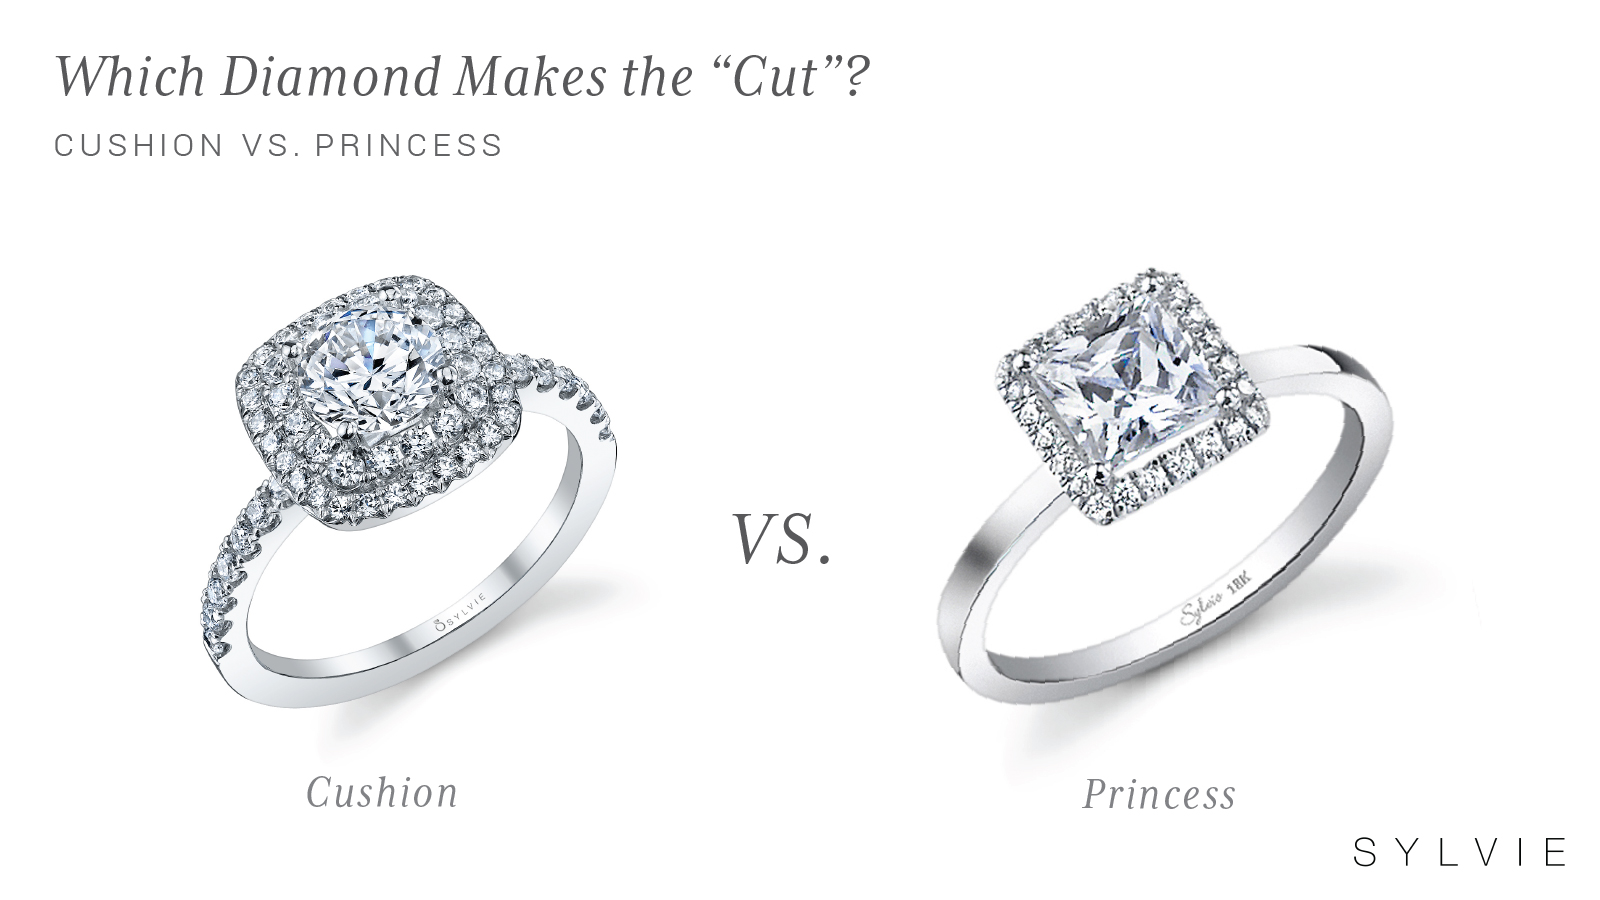 cushion cut diamond vs princess cut